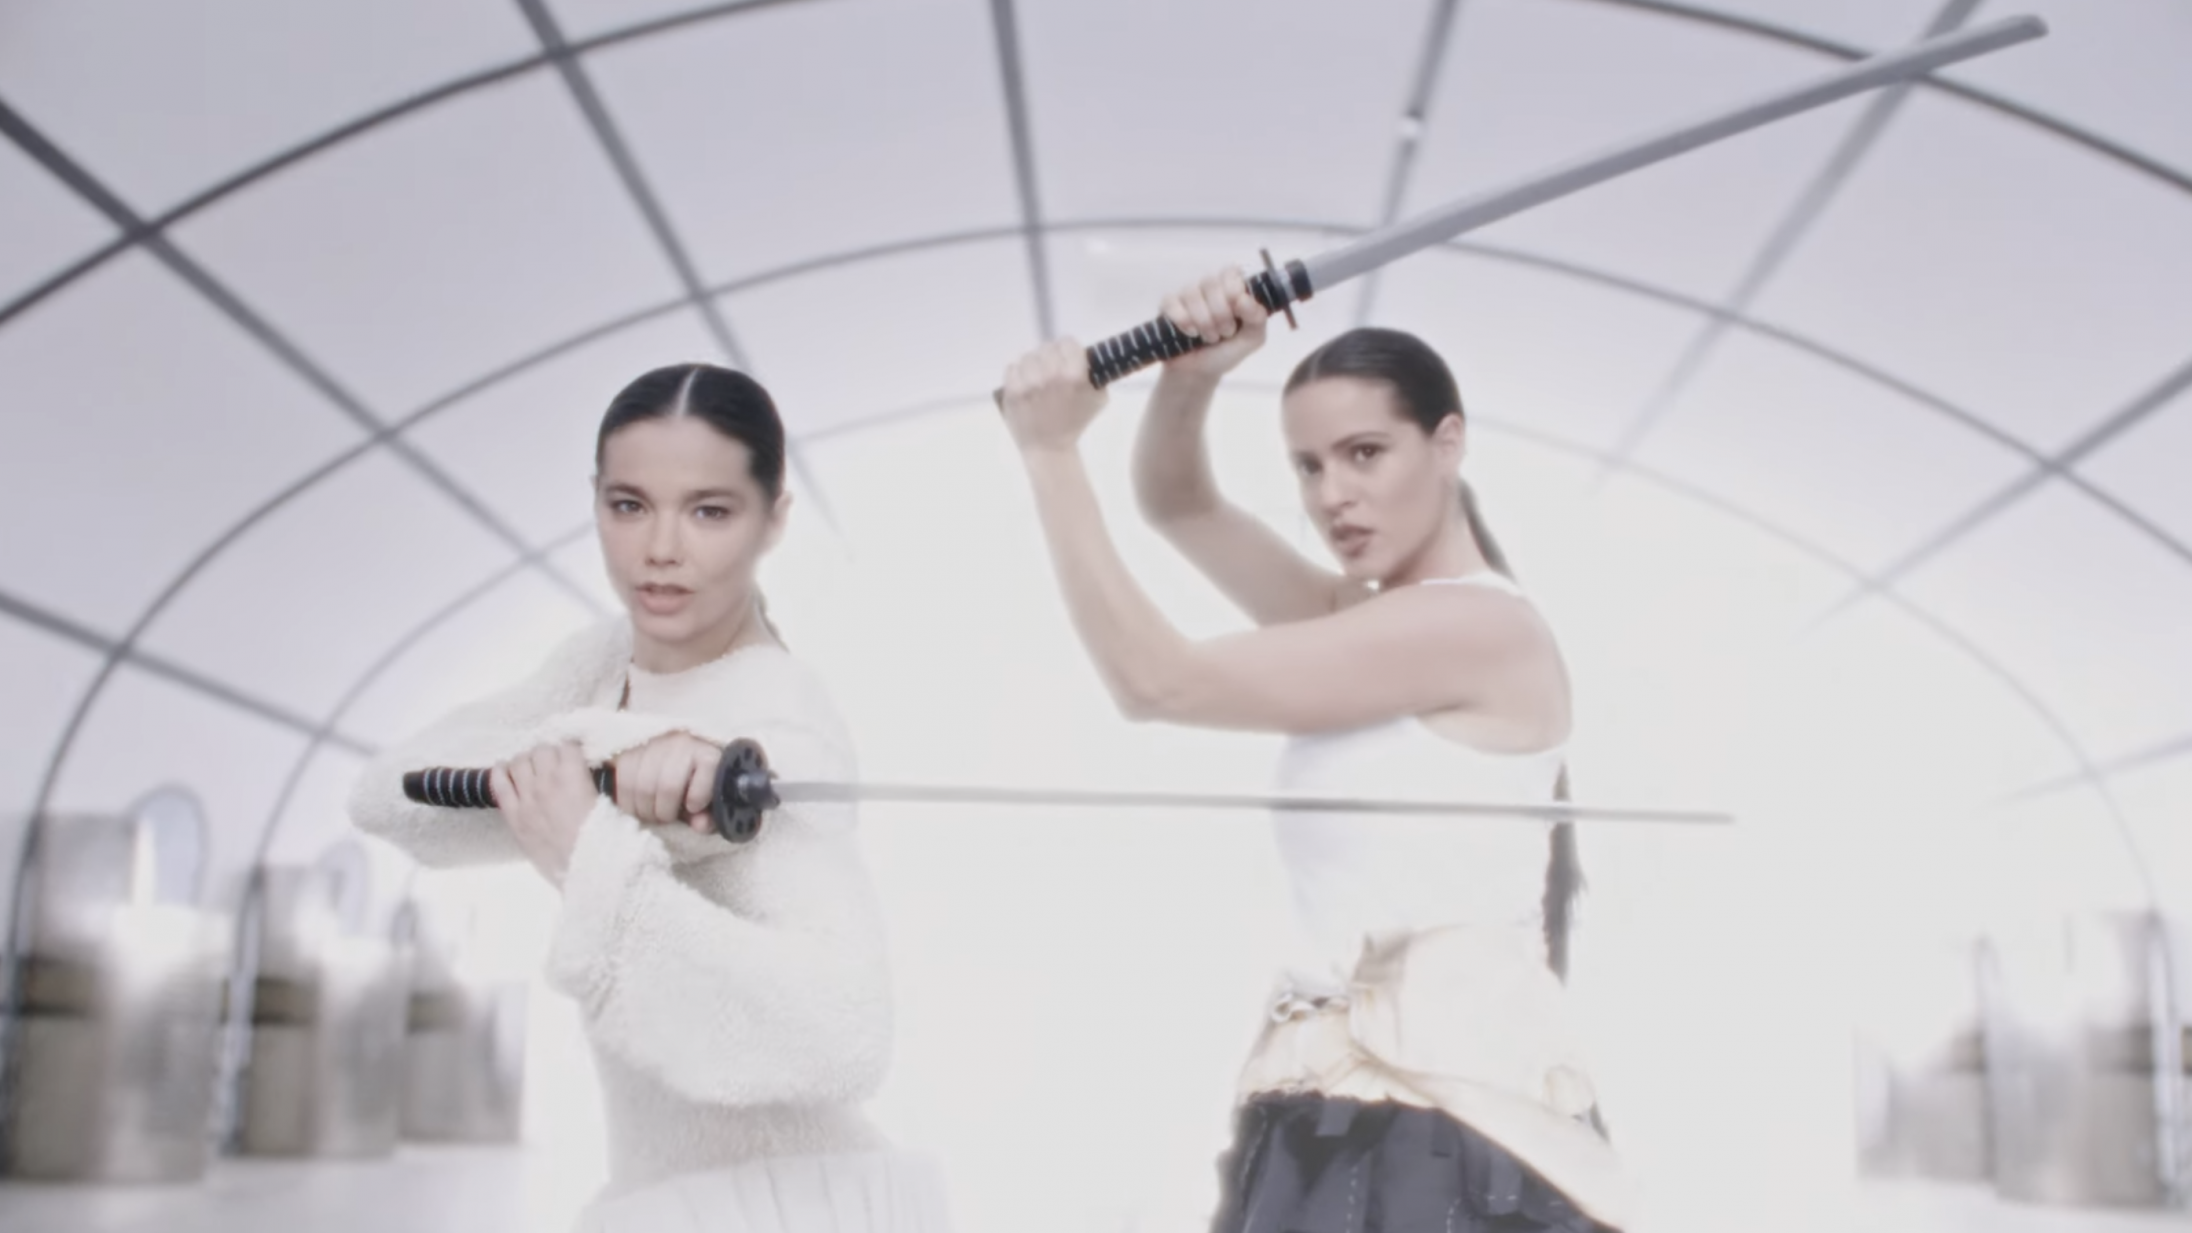 Rosalía og Björk krydser klinger i videoen til deres nye sang ‘Oral’ – donerer alle indtægter til velgørende formål